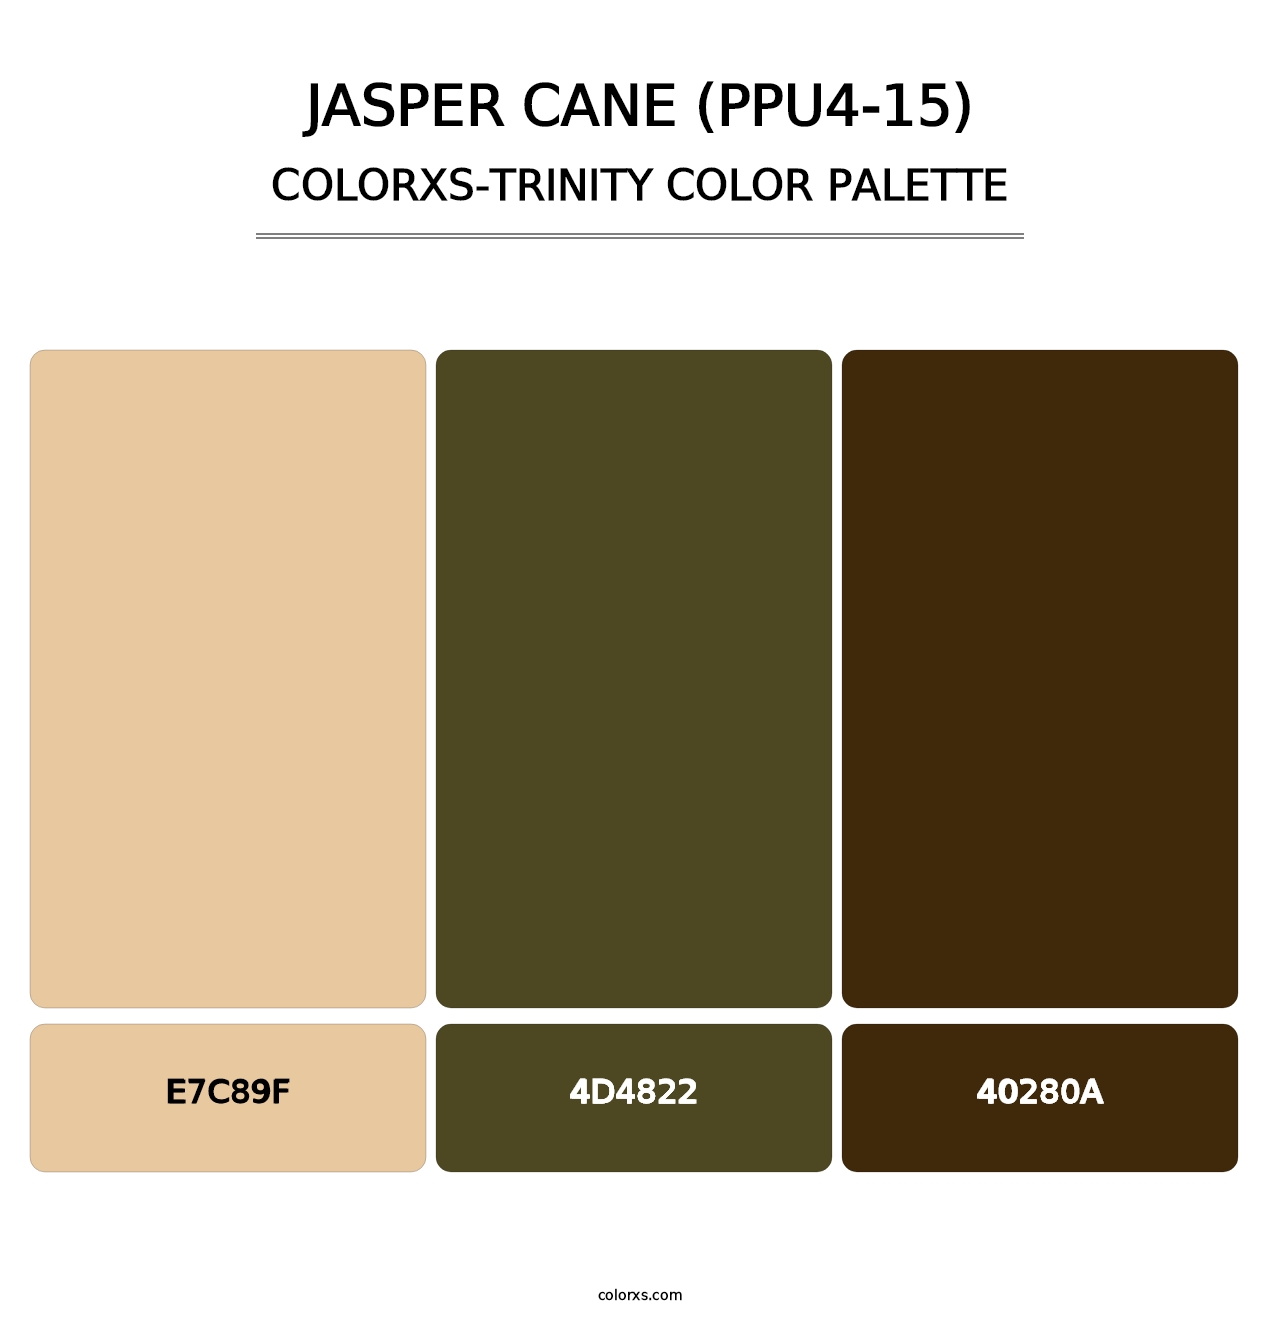 Jasper Cane (PPU4-15) - Colorxs Trinity Palette